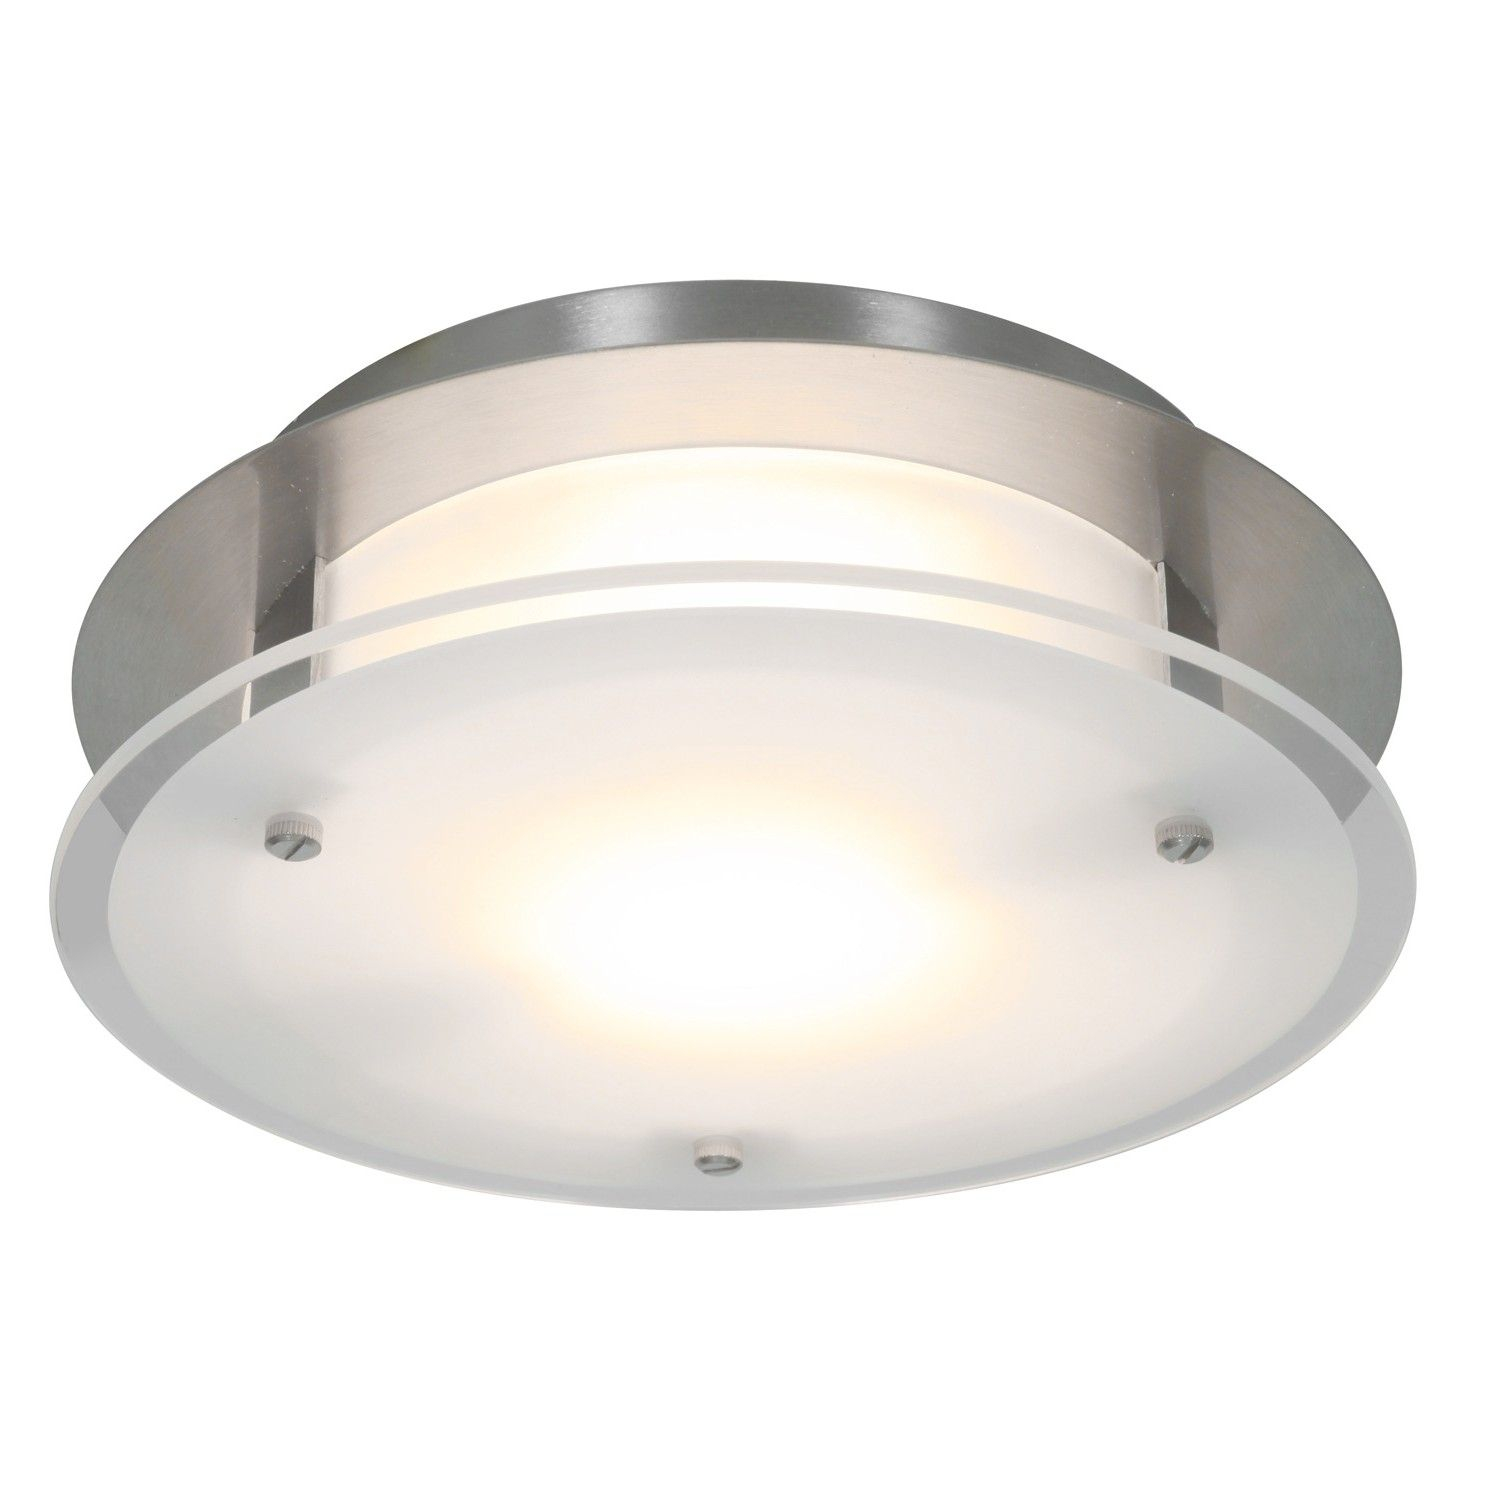 Luxury Ductless Bathroom Fan With Light Bathroom Fan Light inside sizing 1500 X 1500